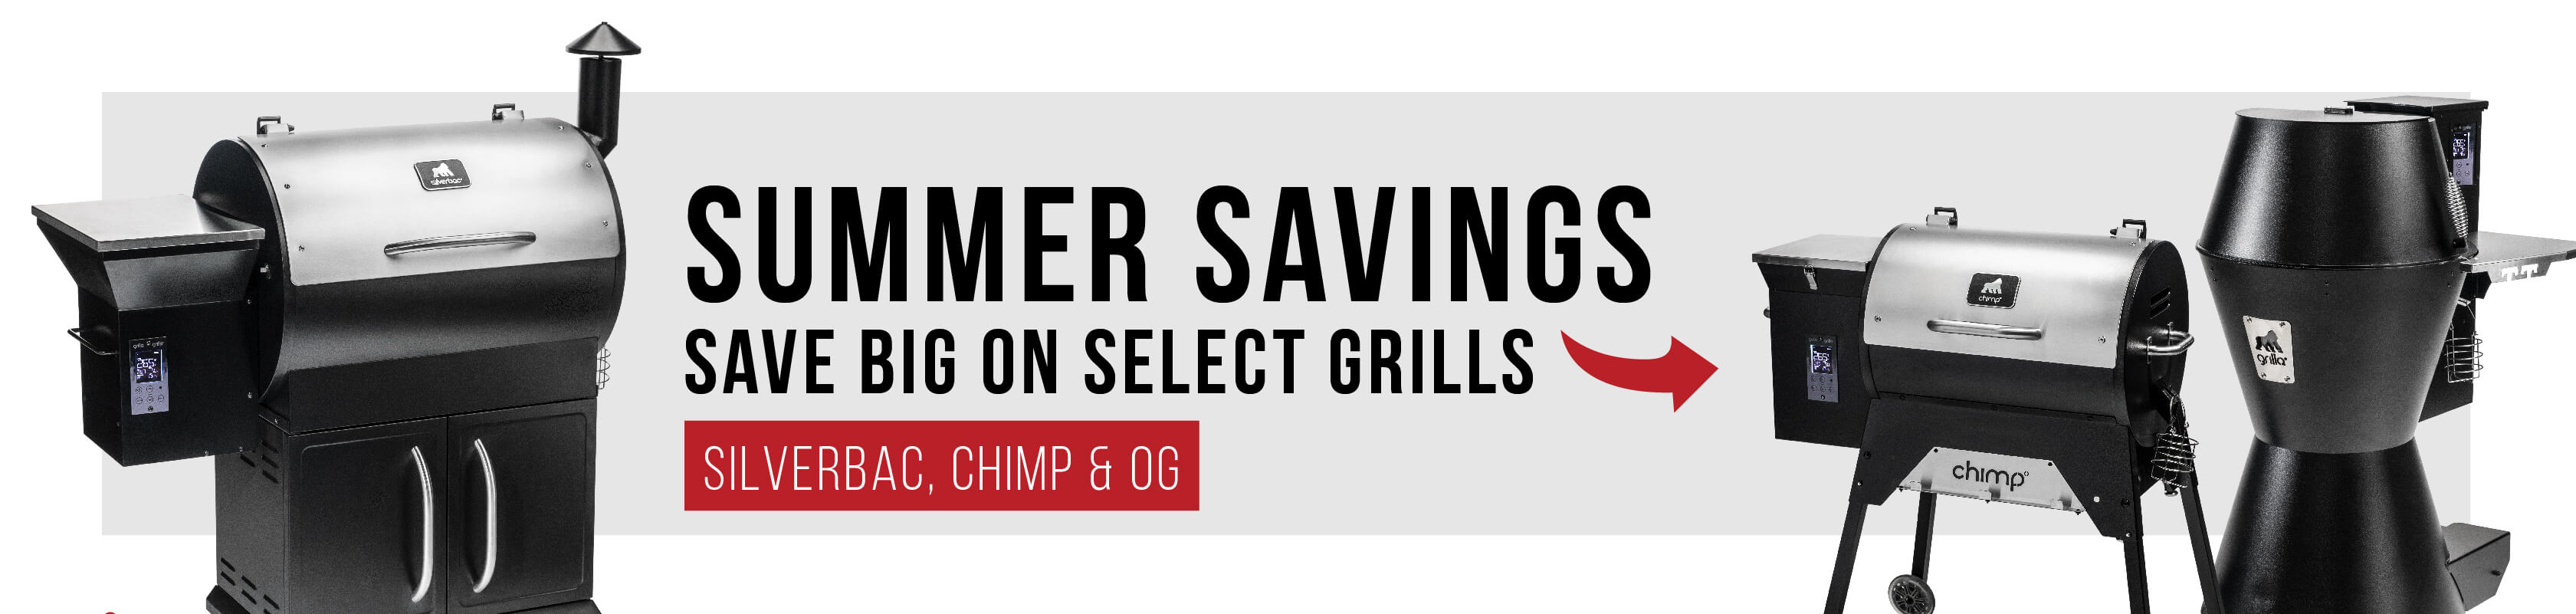 Summer Savings Save Big On Select Grills | Silverbac, OG, Chimp